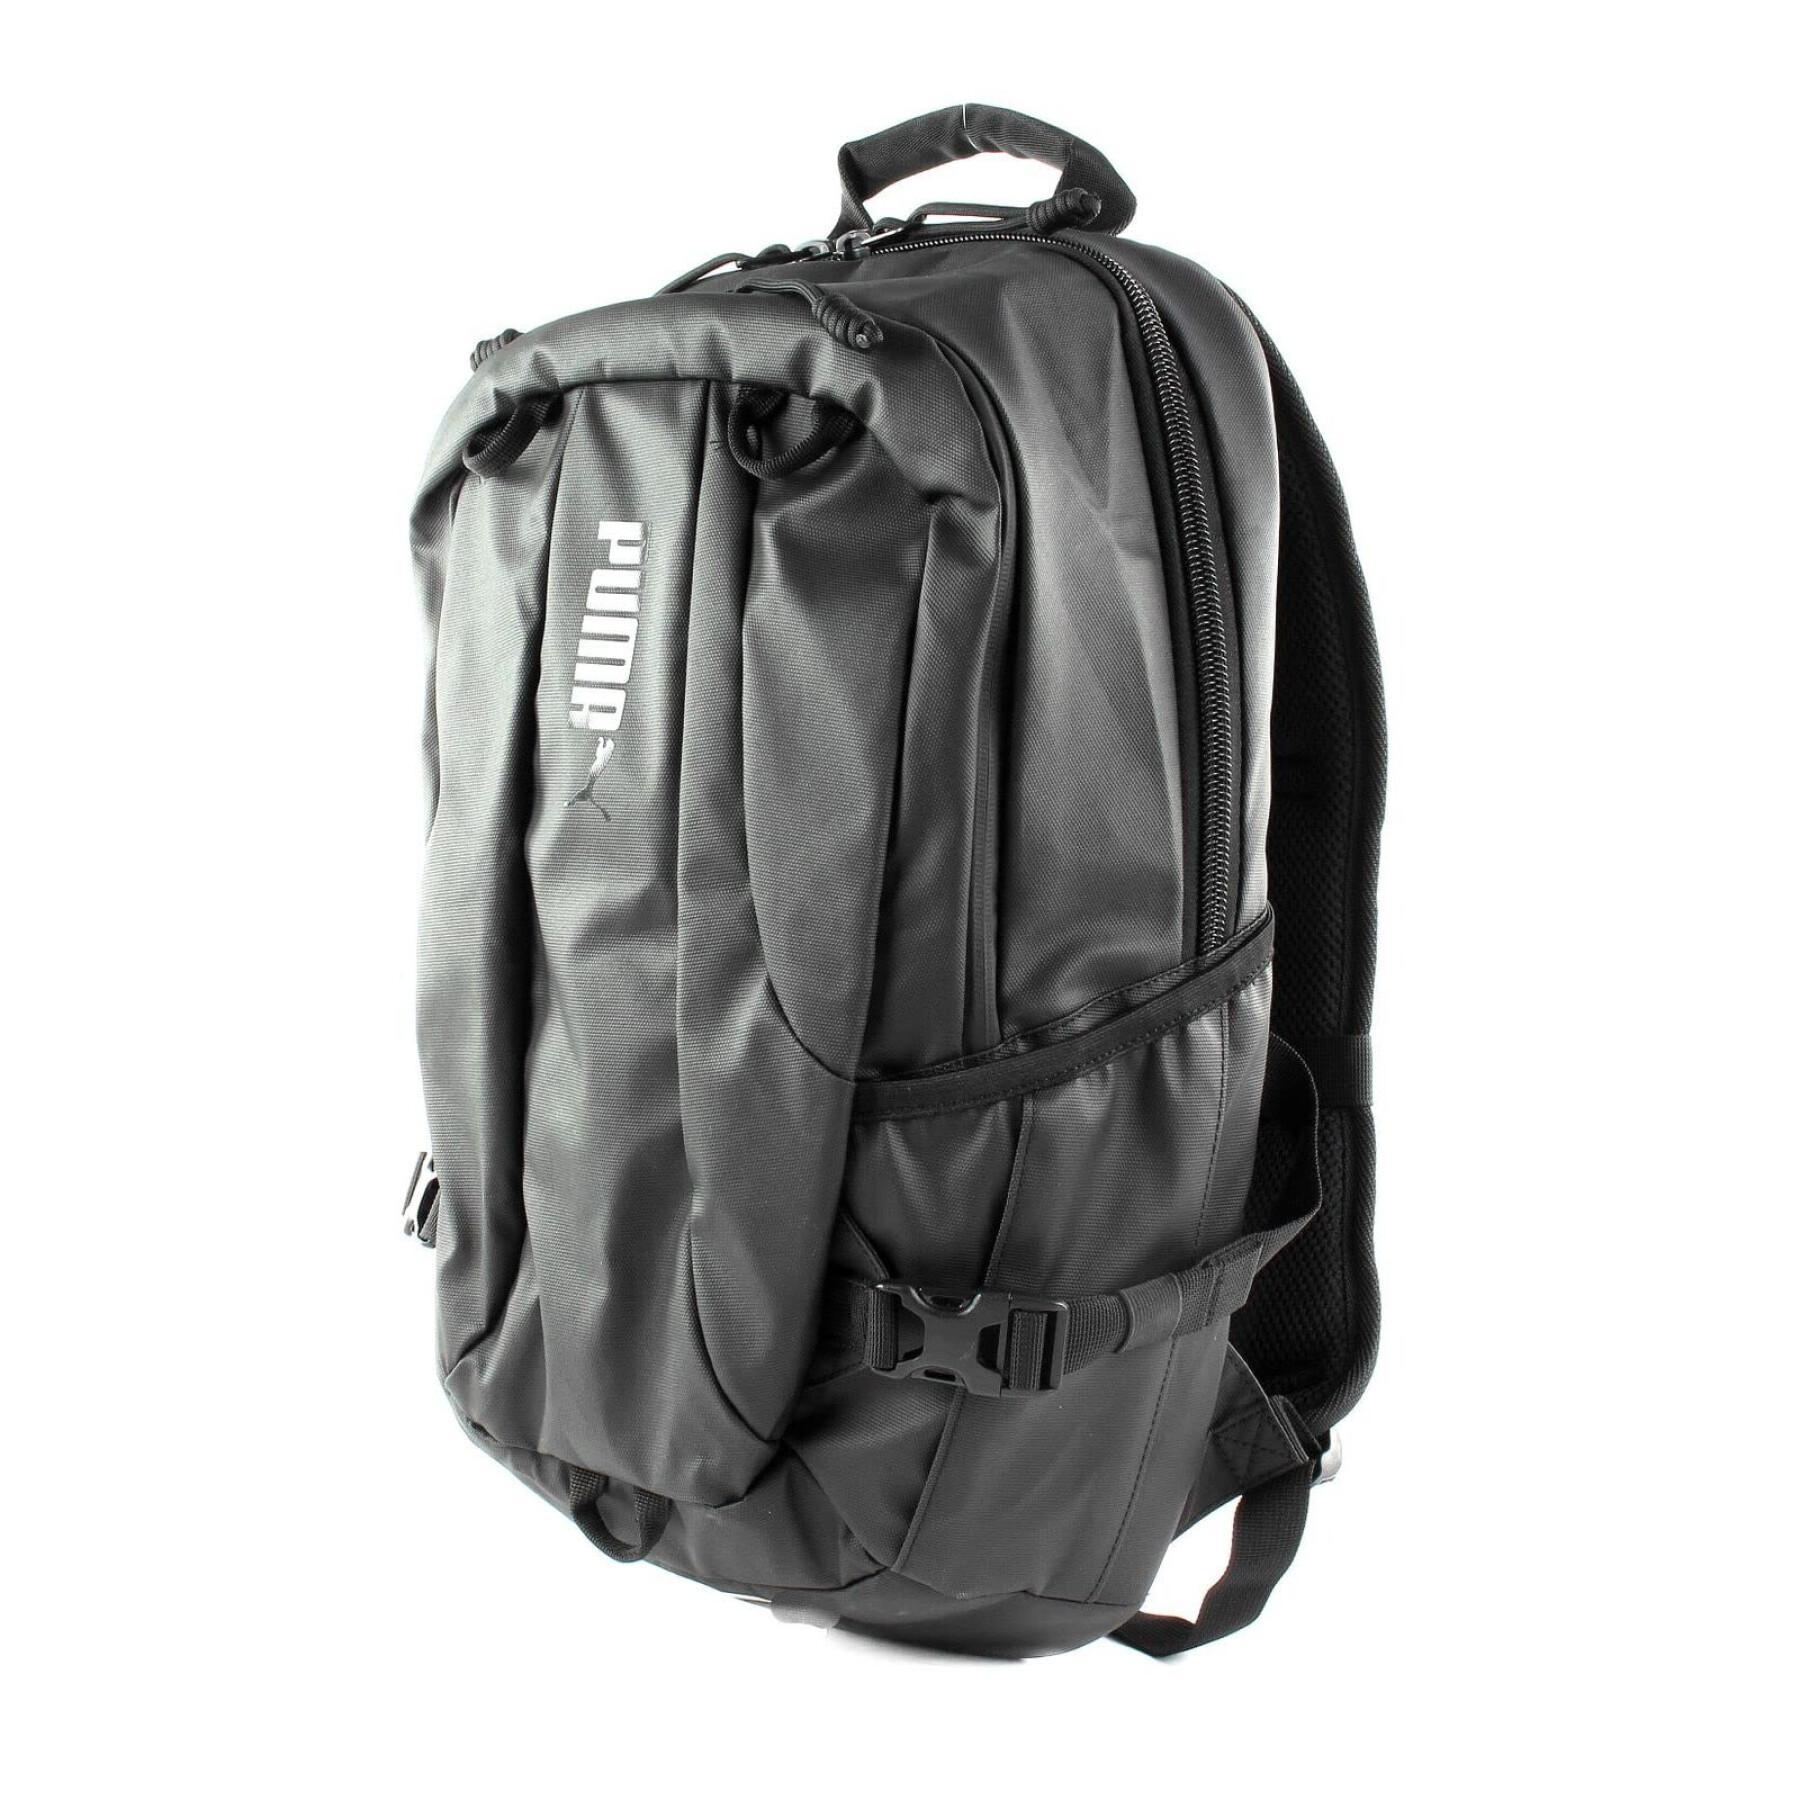 Backpack Puma CHK-N